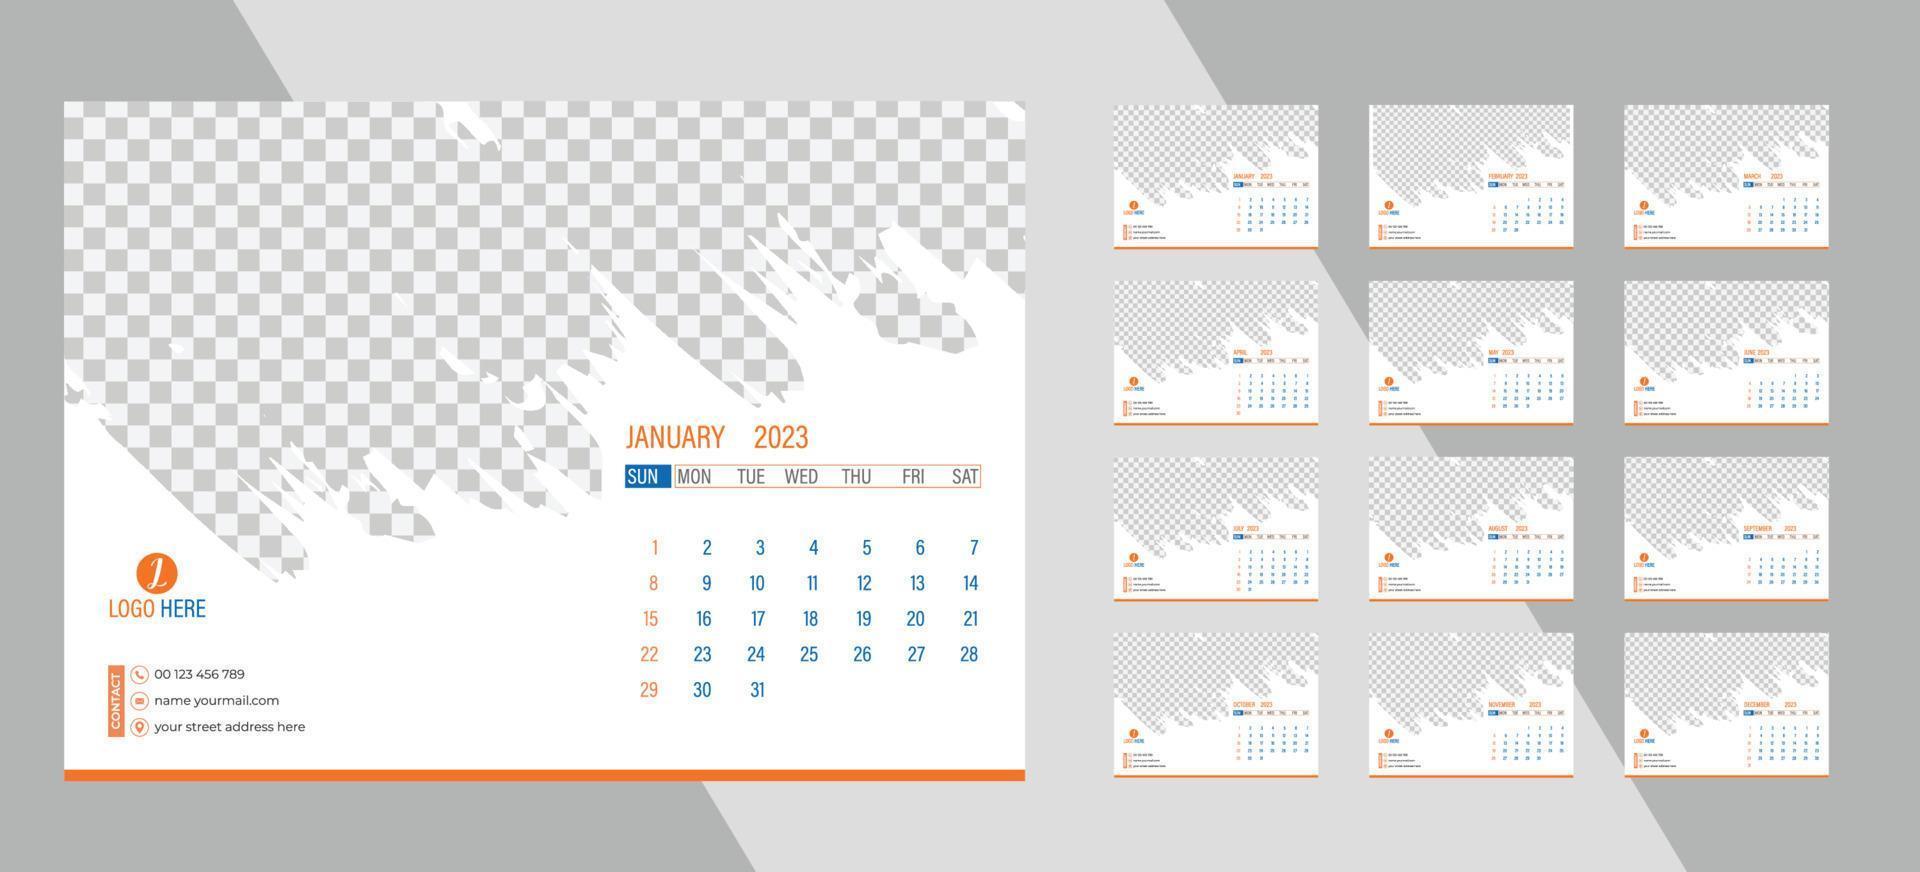 calendrier photo mensuel de bureau 2023. mise en page simple du calendrier photo horizontal mensuel pour le nouvel an 2023 en anglais. calendrier de couverture et modèles de 12 mois. vecteur